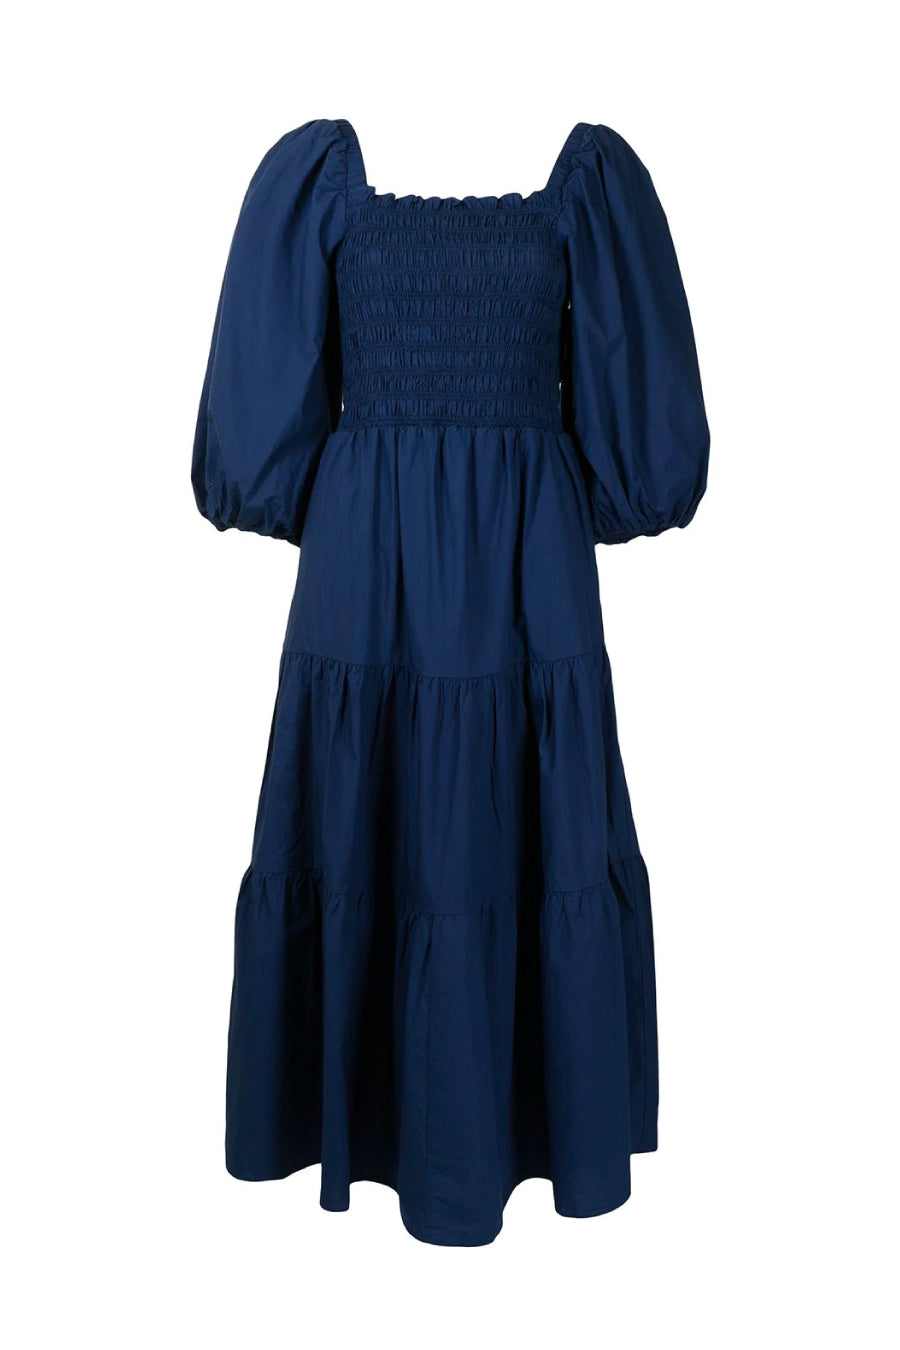 Sea NY Claudine Puff Sleeve Smocked Dress - Blue